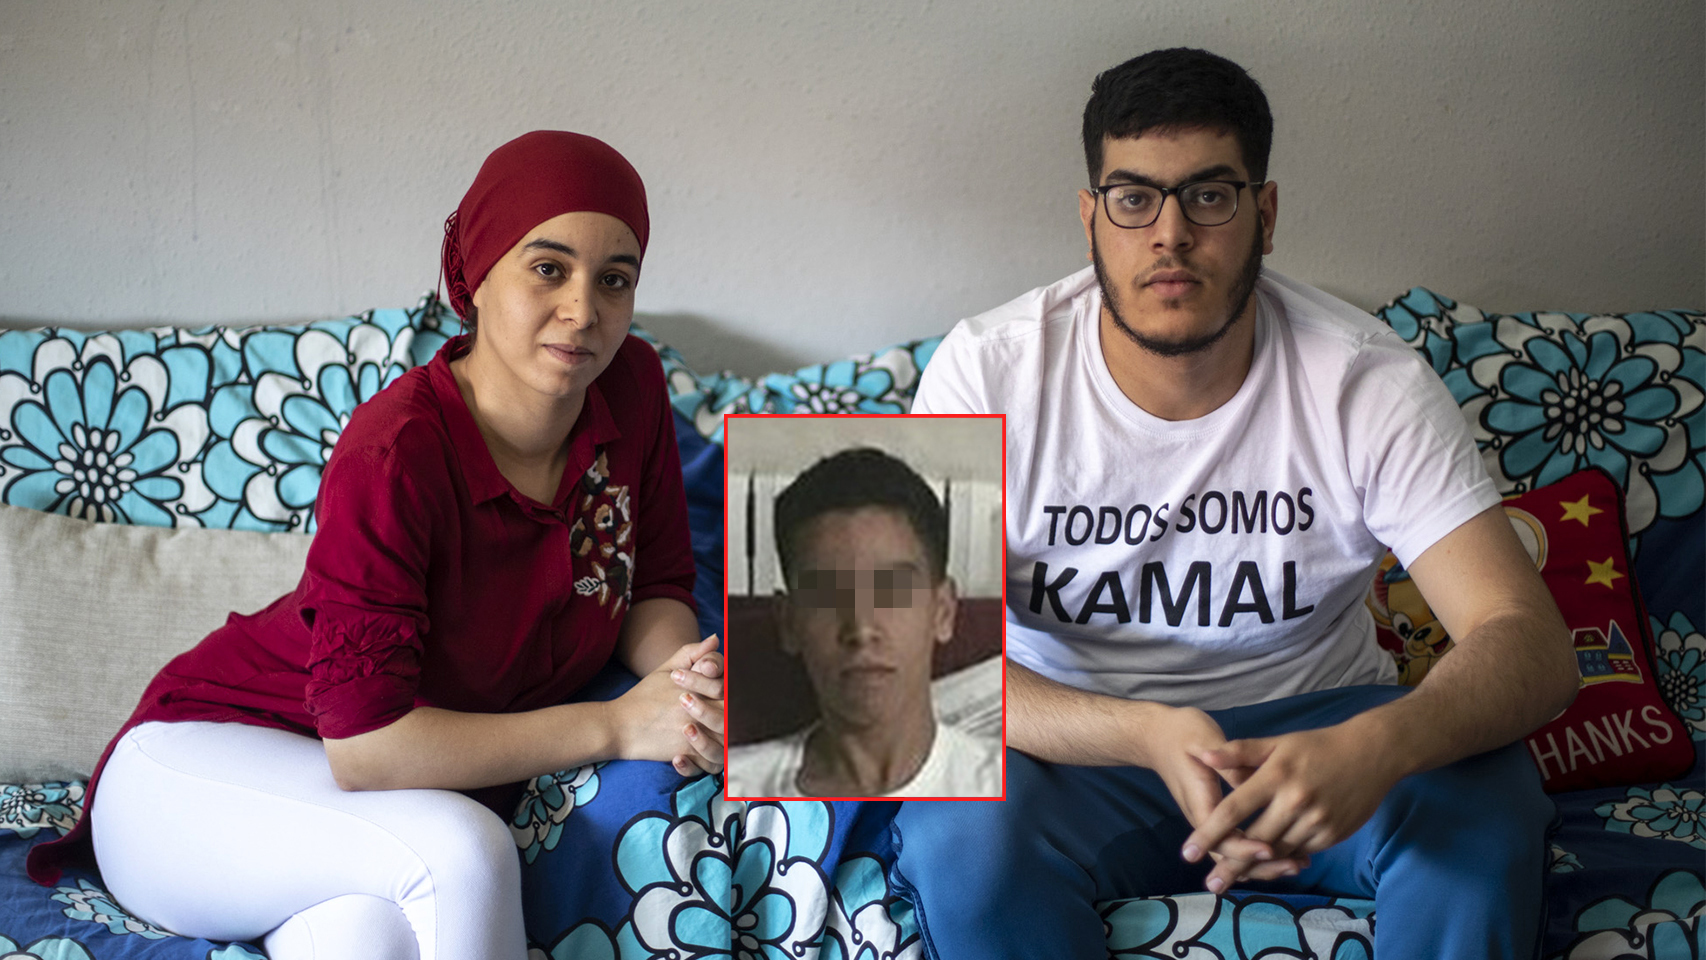 De izquierda a derecha, Samia Mouloudi, hermana de la víctima, Kamal antes del ataque y Ayoub, hermano mayor de Kamal